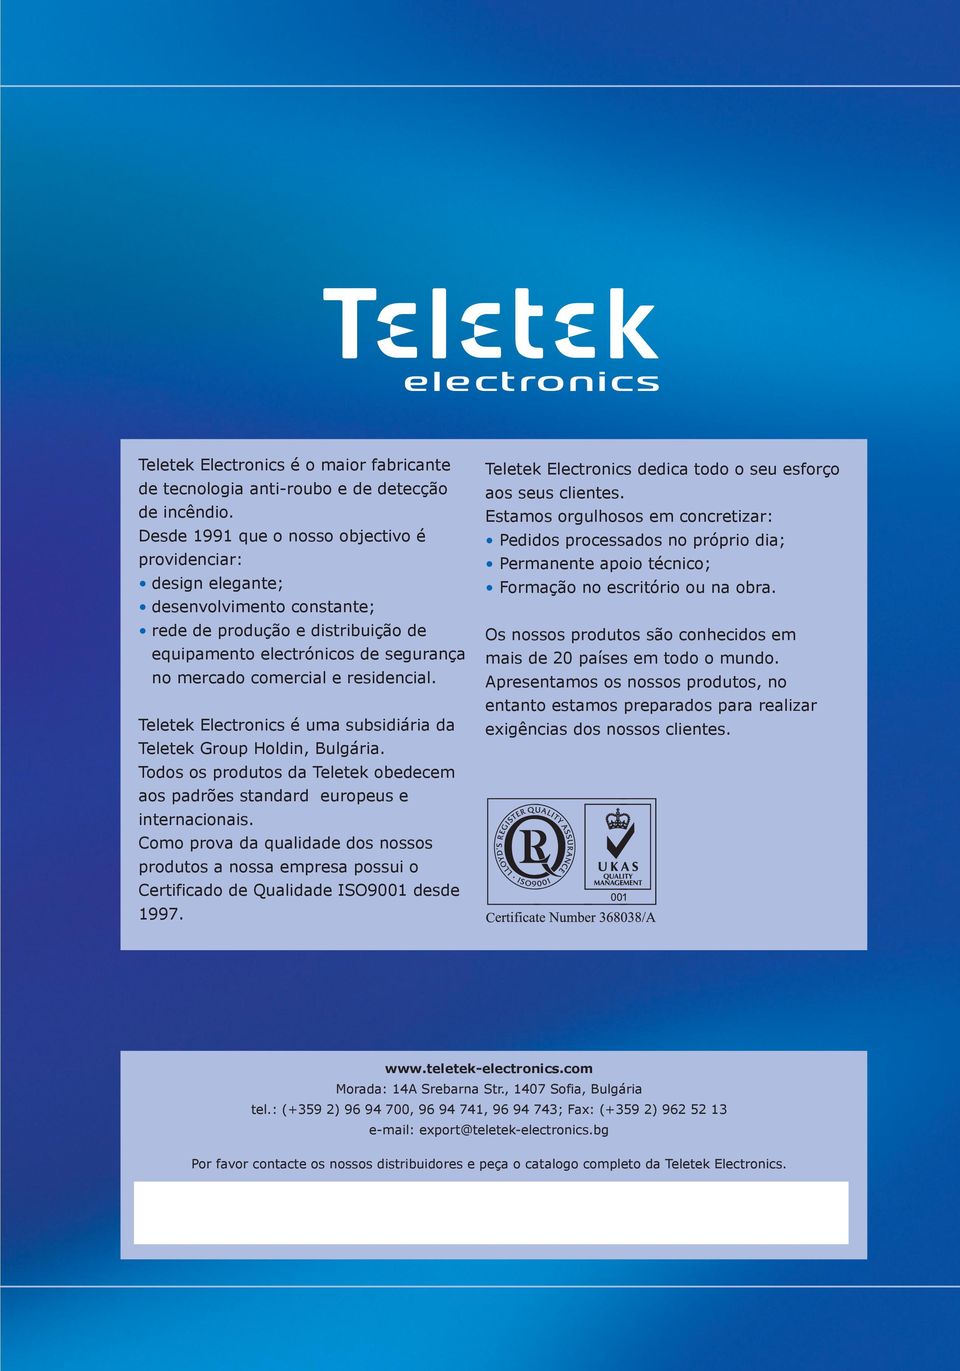 residencial. Teletek Electronics é uma subsidiária da Teletek Group Holdin, Bulgária. Todos os produtos da Teletek obedecem aos padrões standard europeus e internacionais.